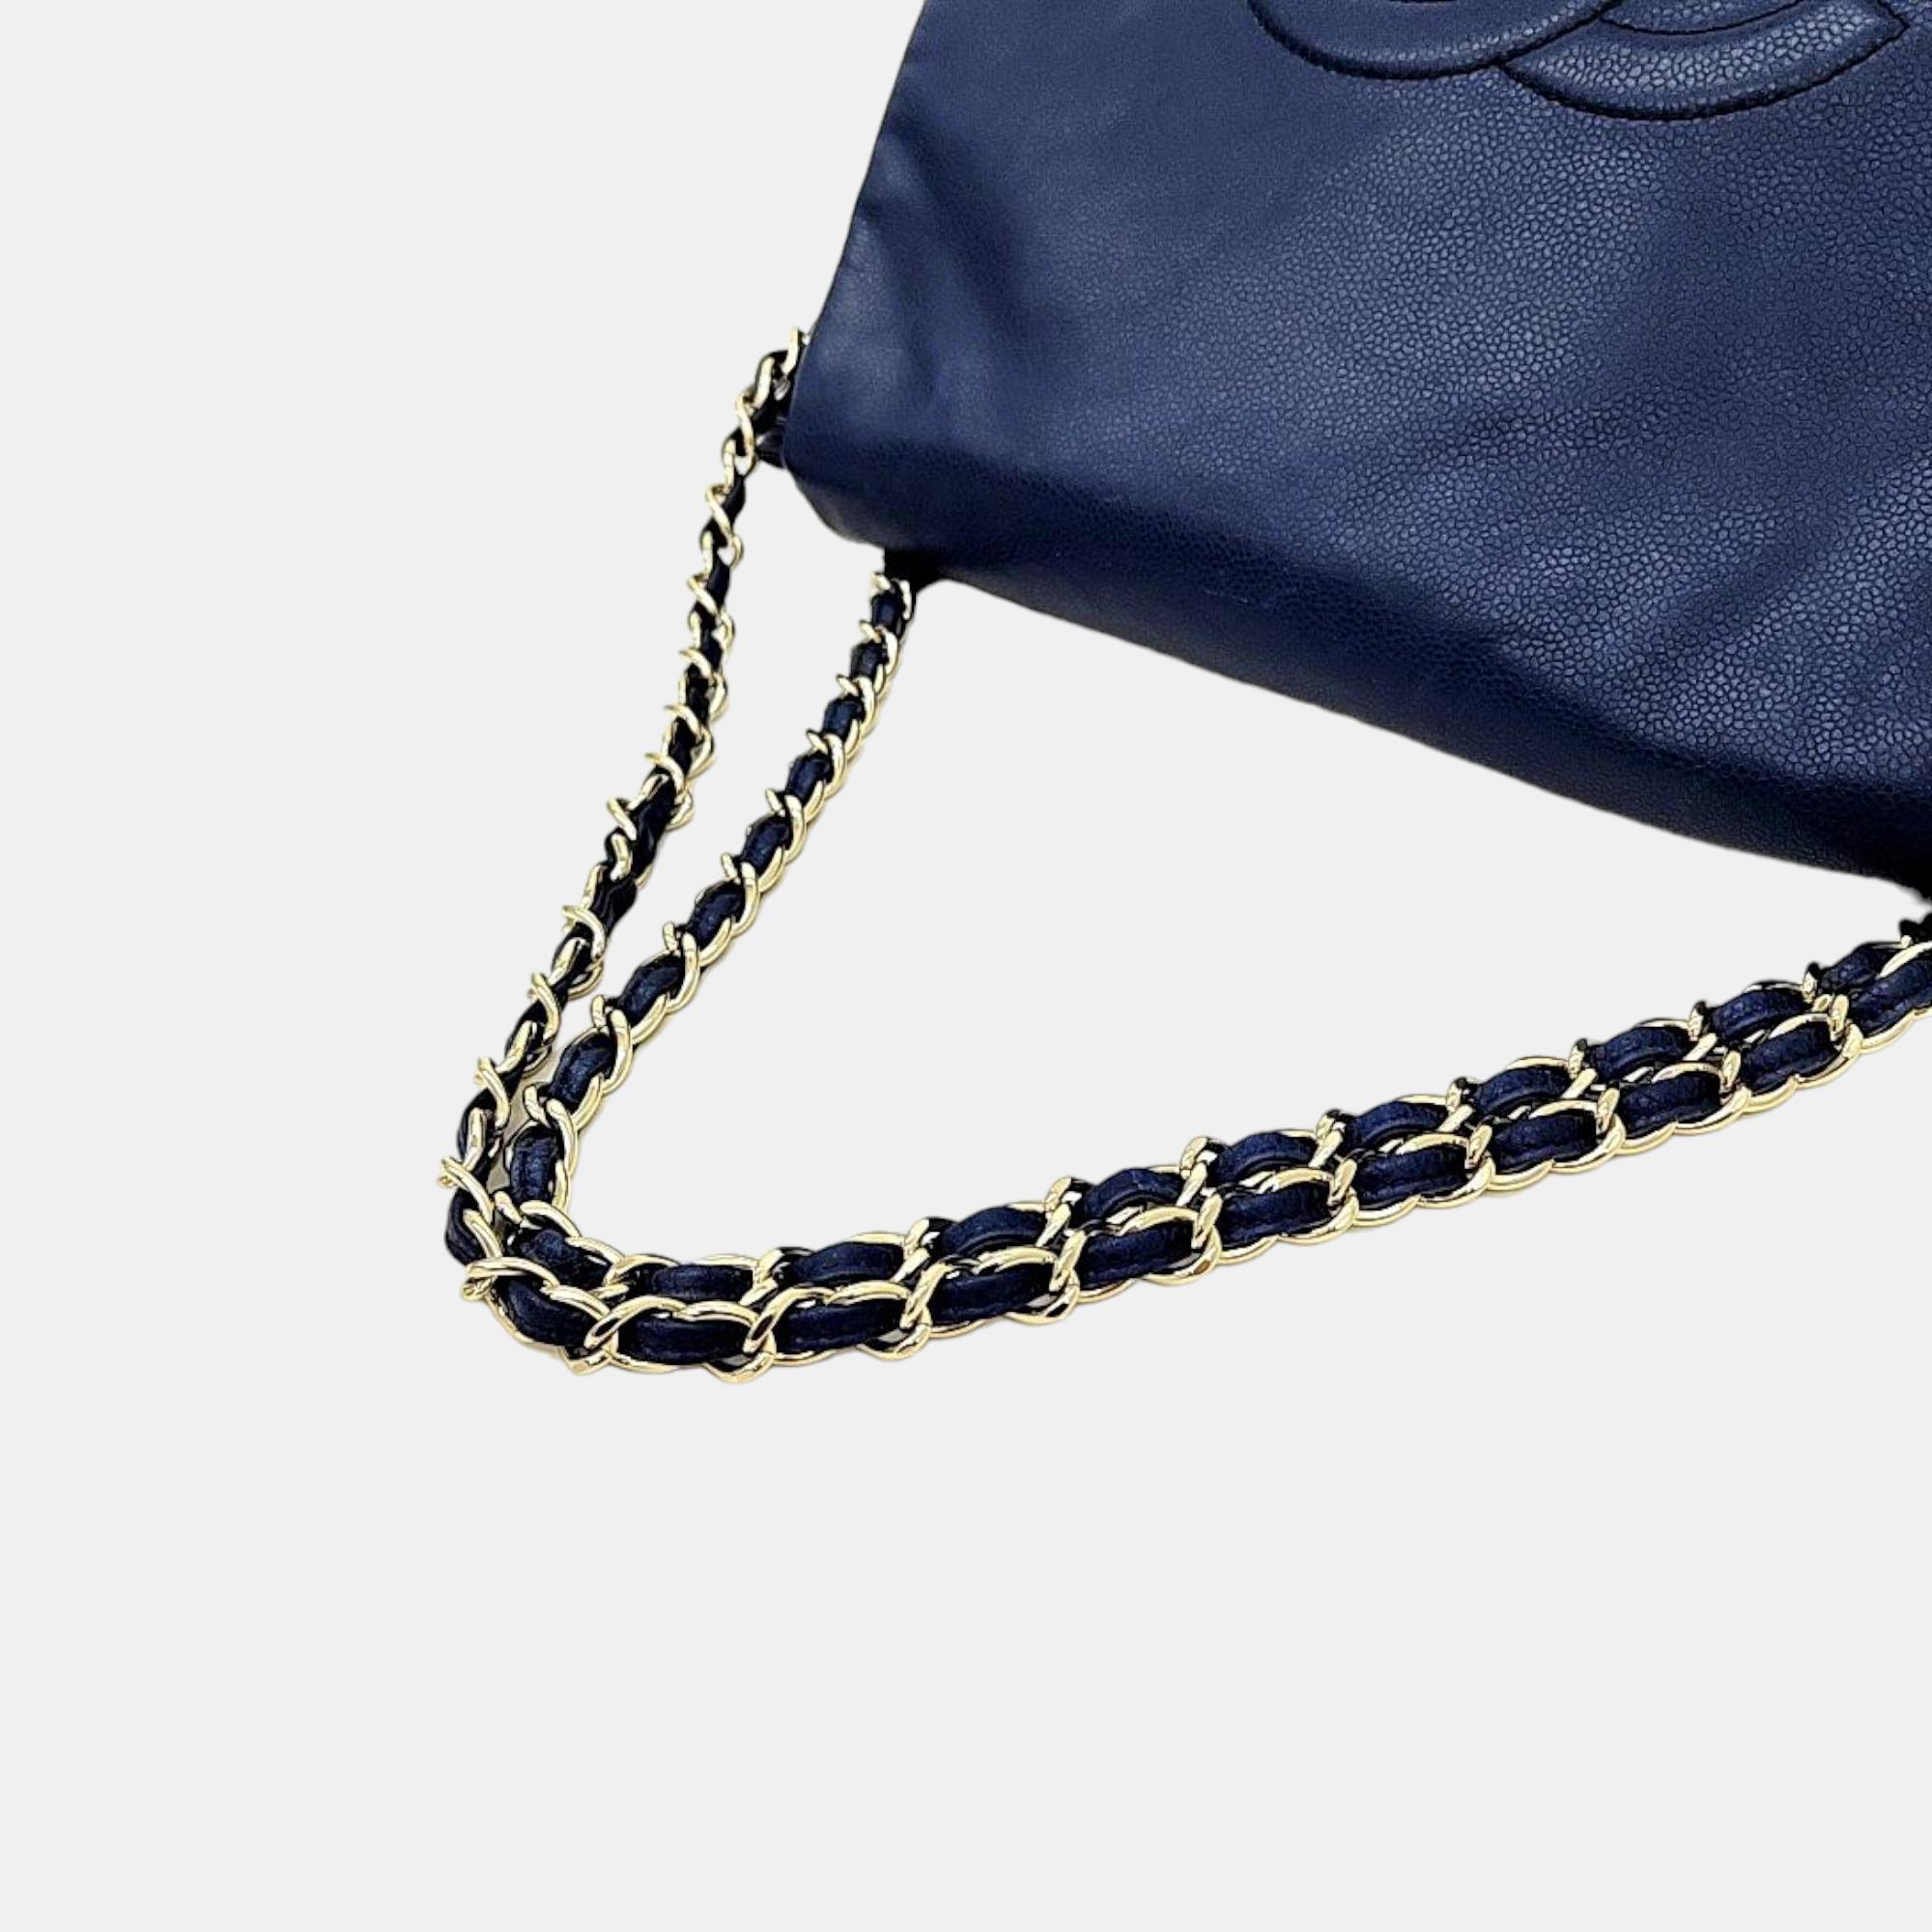 Chanel Blue Leather Timeless Half Moon Shoulder Bag